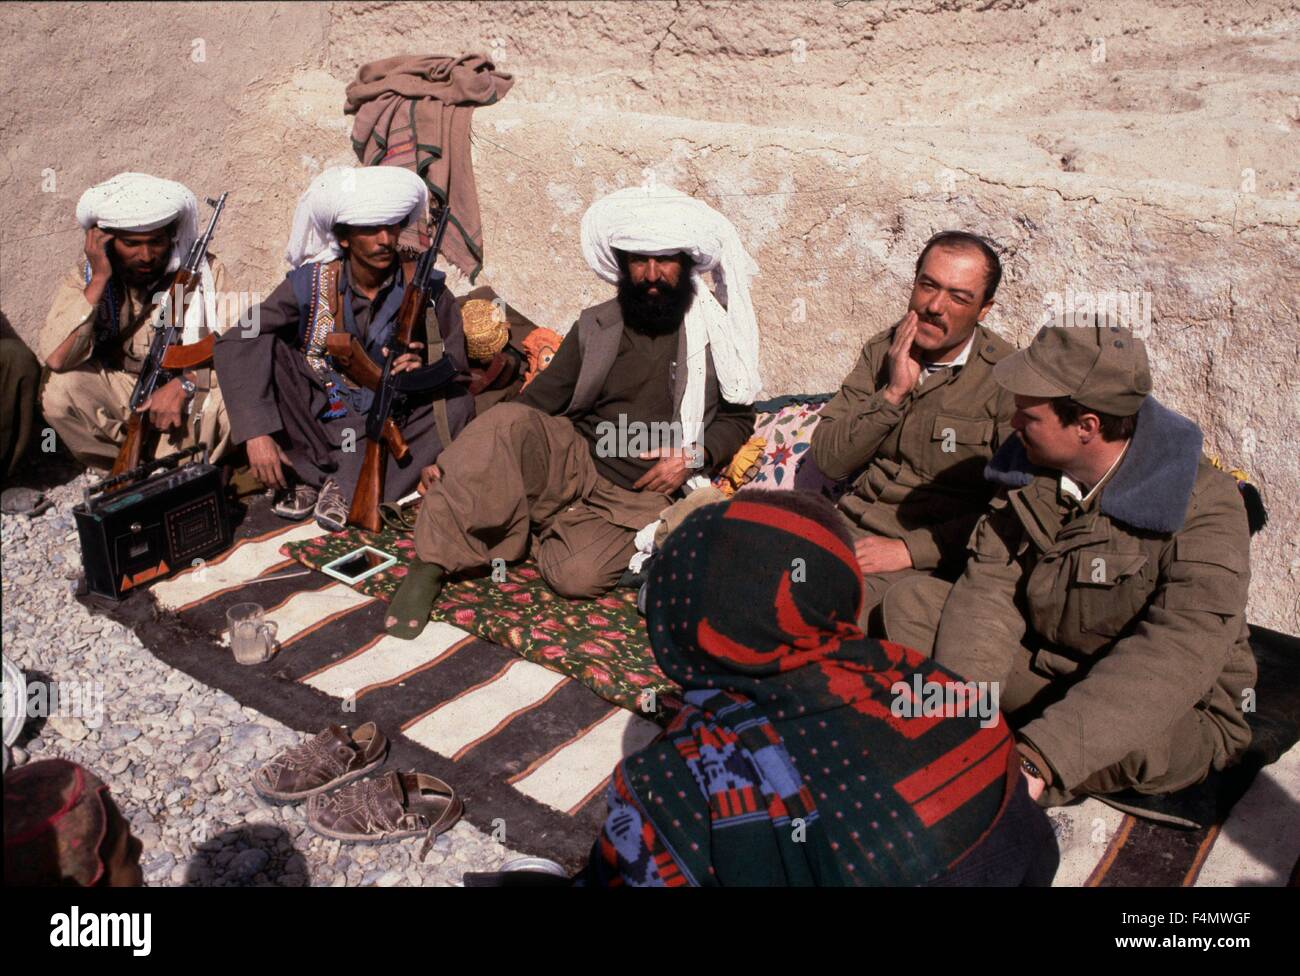 Операция в афганистане название. Моджахеды в Афганистане 1979. Талибы Афганистан 1979. Афганские моджахеды 1989. Белуджи в Афганистане.